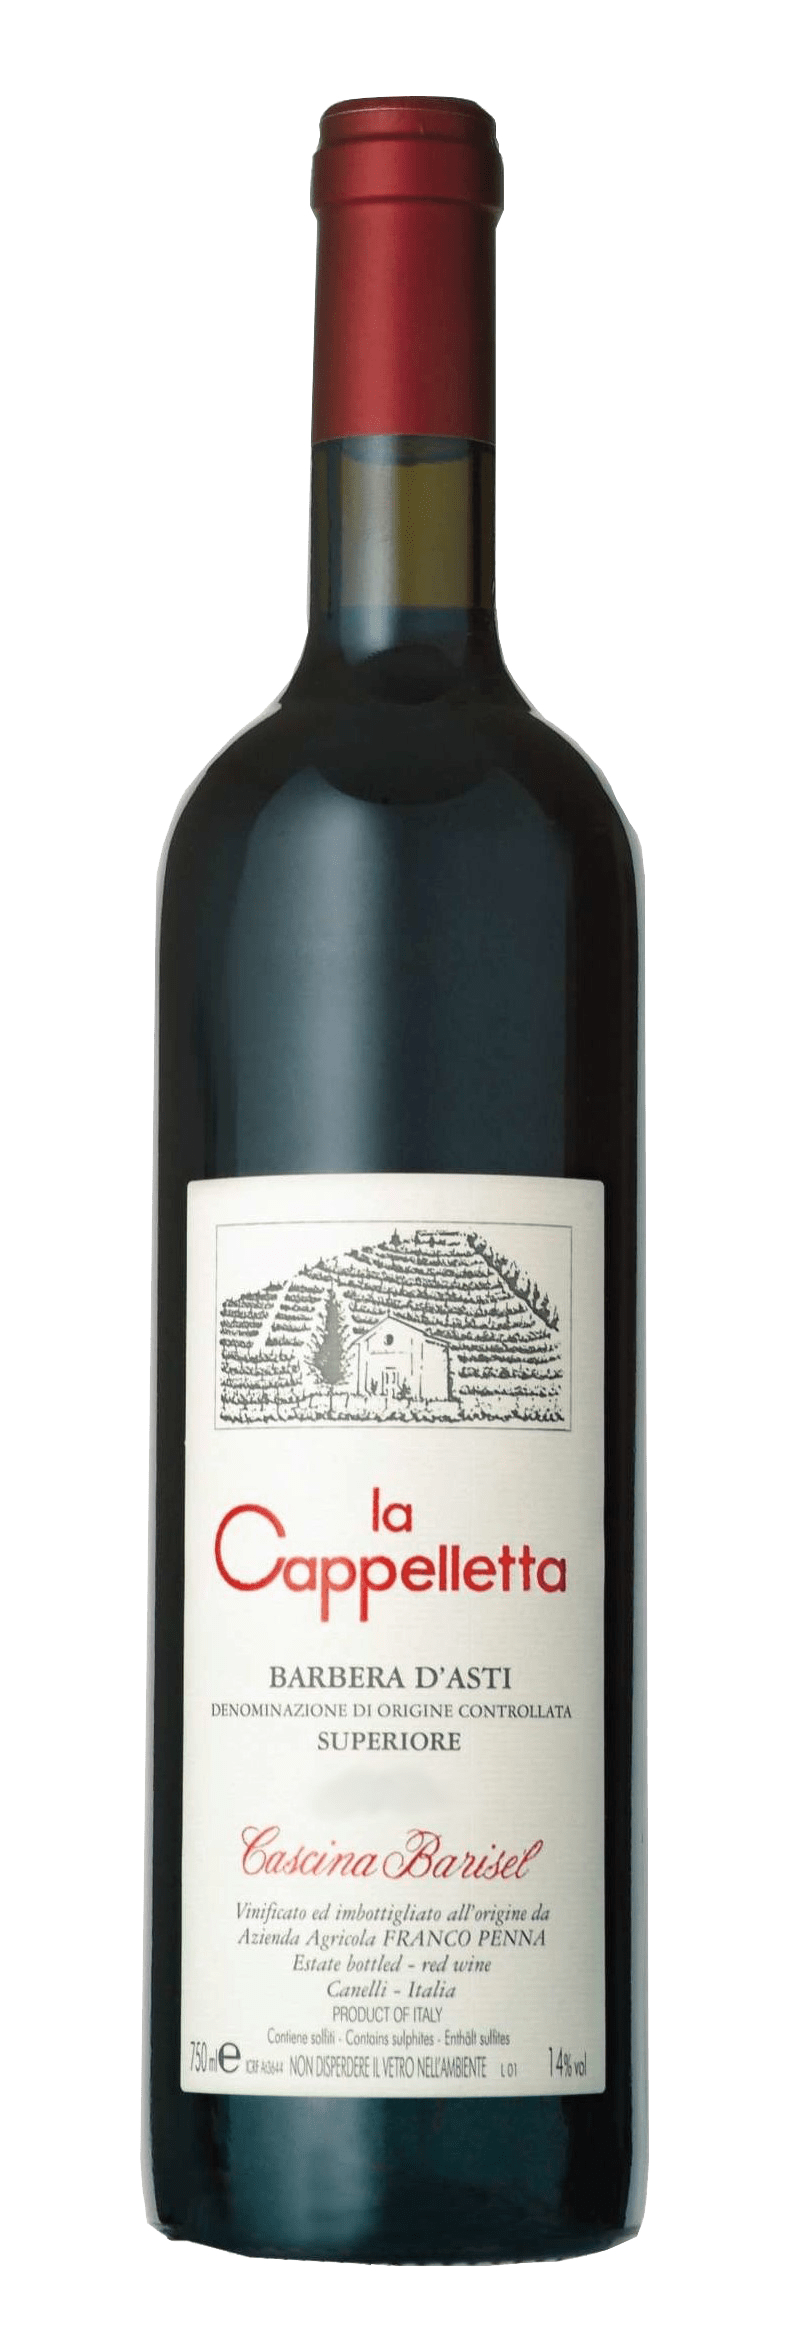 La Cappelletta, Barbera d'Asti